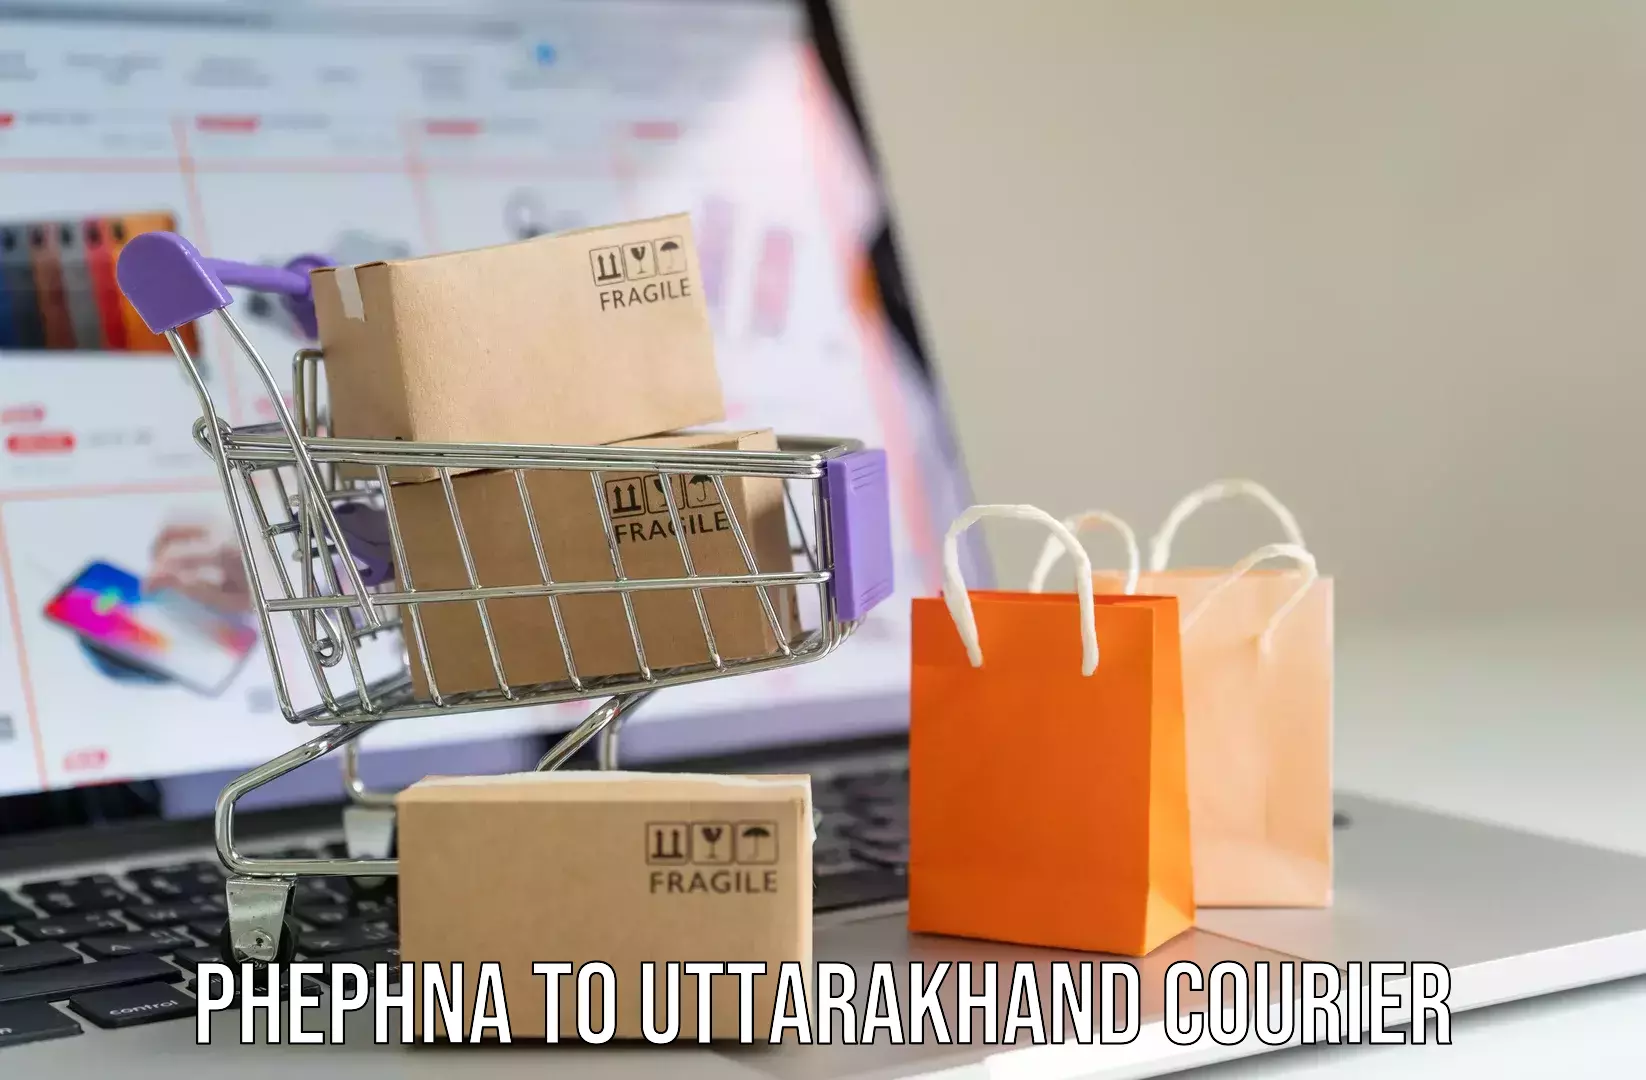 Baggage transport network Phephna to Uttarakhand